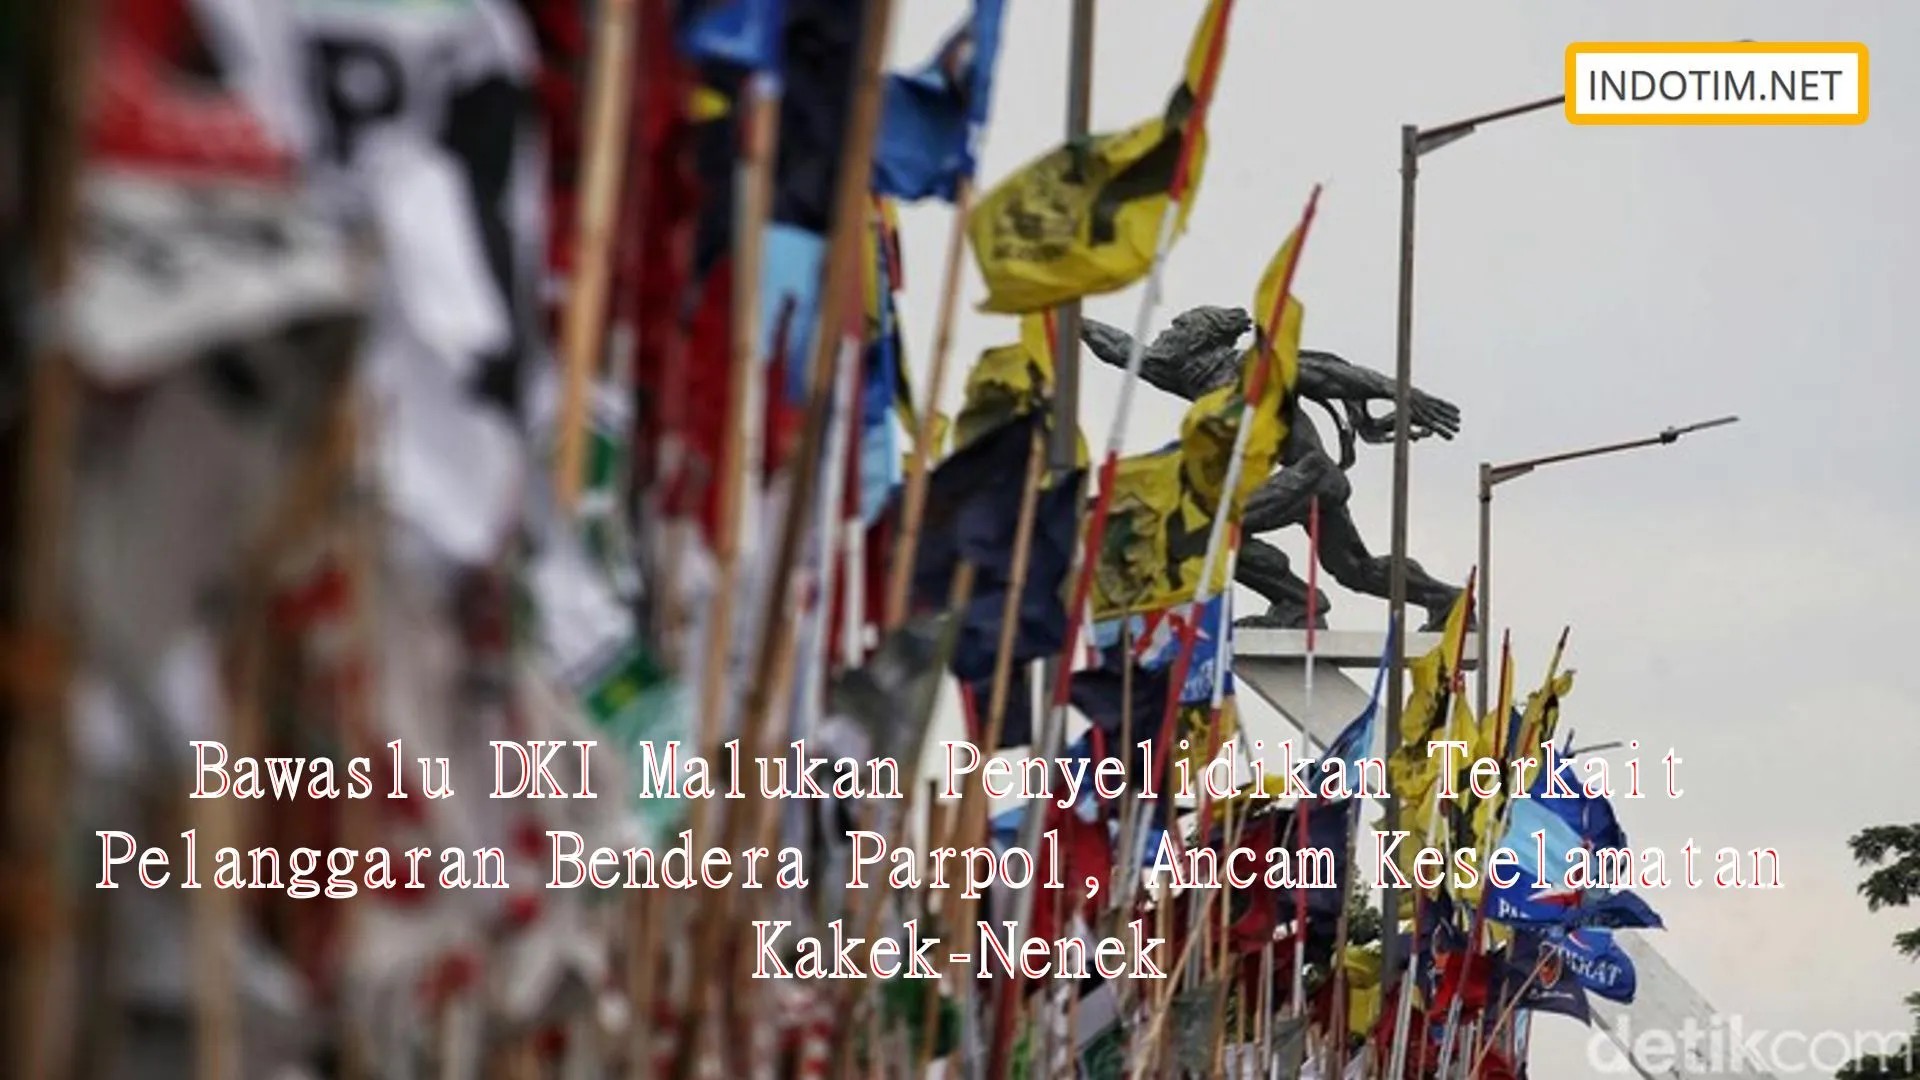 Bawaslu DKI Malukan Penyelidikan Terkait Pelanggaran Bendera Parpol, Ancam Keselamatan Kakek-Nenek